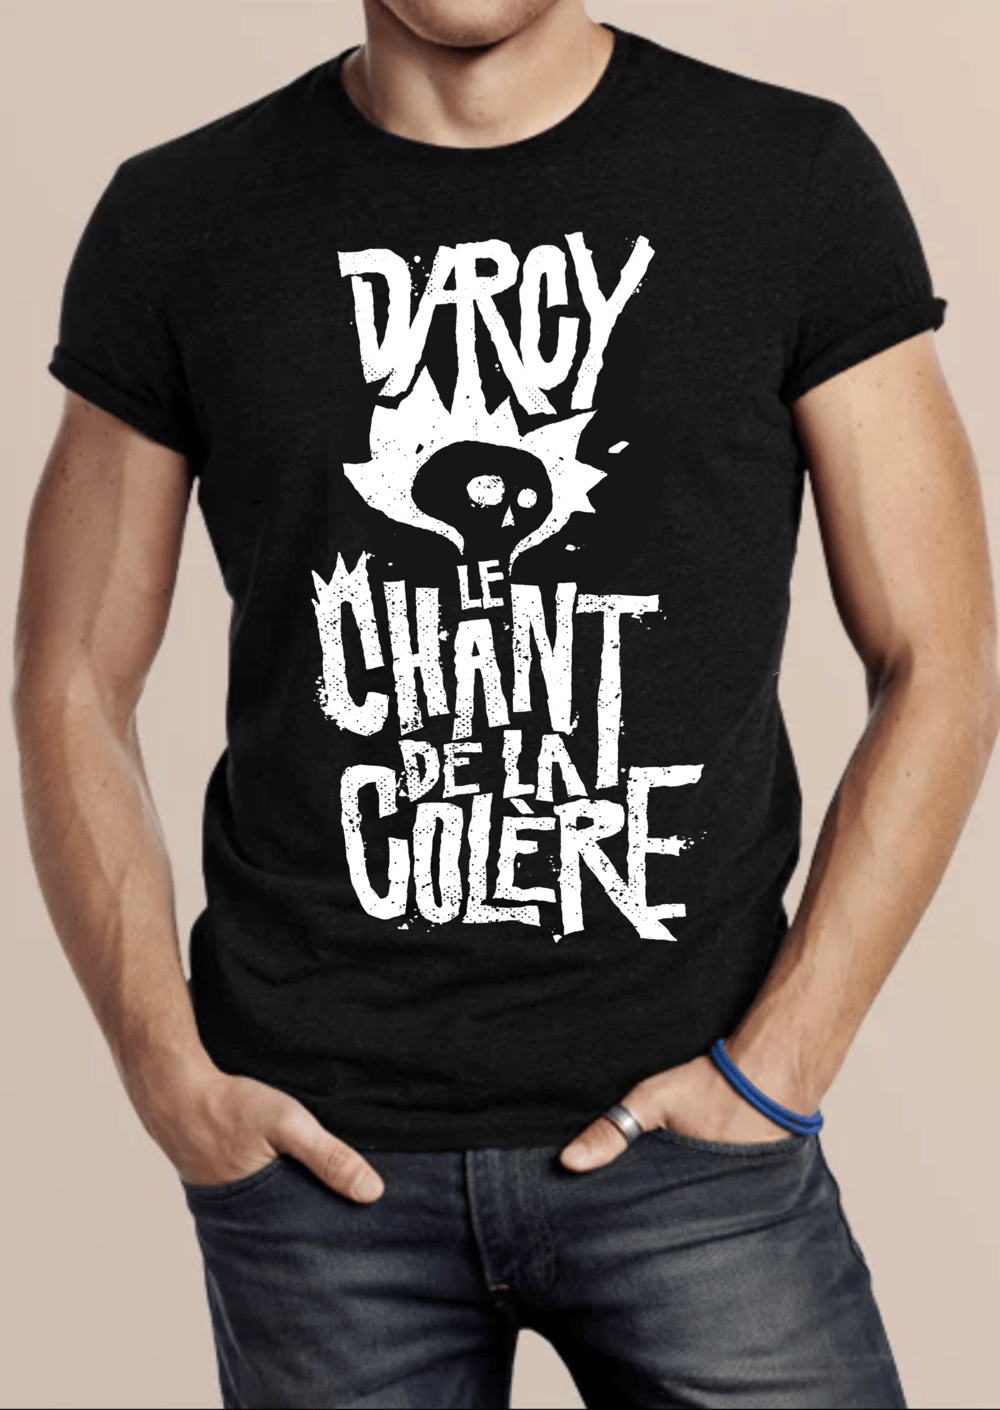 T-Shirt "Le Chant de la colère" modèle Homme / modèle Femme